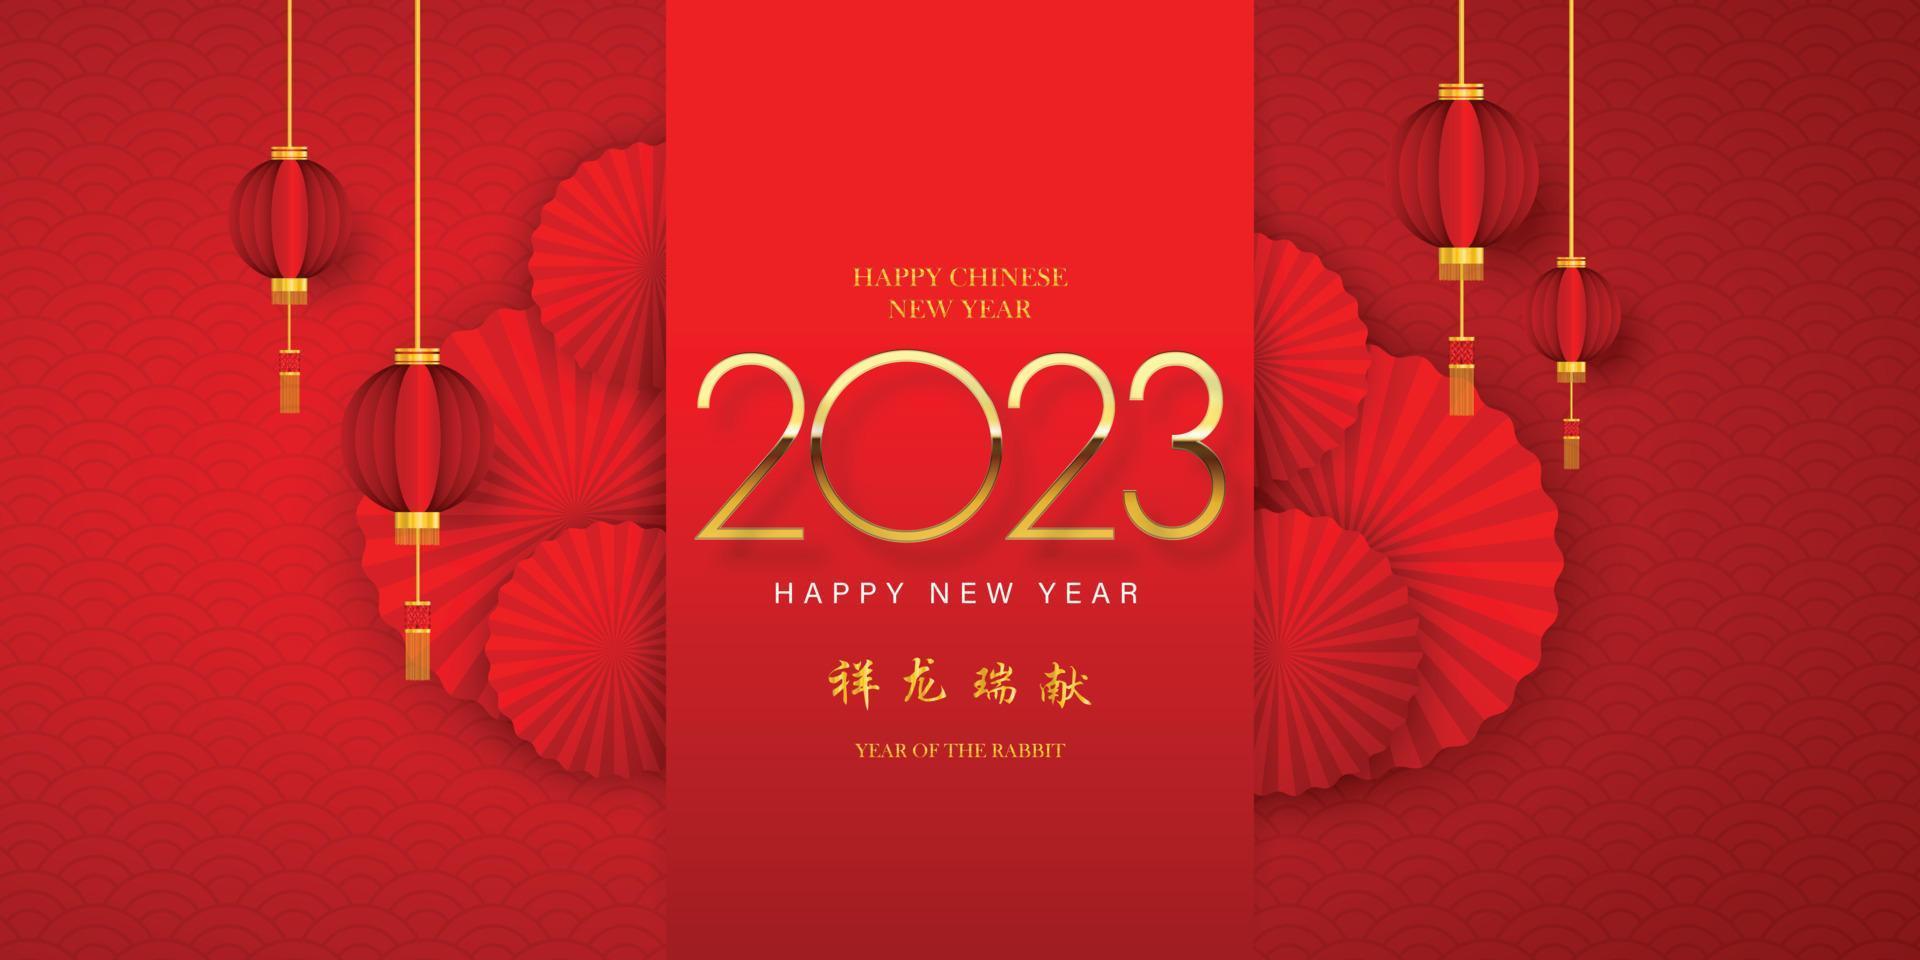 joyeux nouvel an chinois 2023 dans un cadre de motif chinois doré traduction de texte chinois calendrier chinois pour le lapin de lapin 2023 vecteur